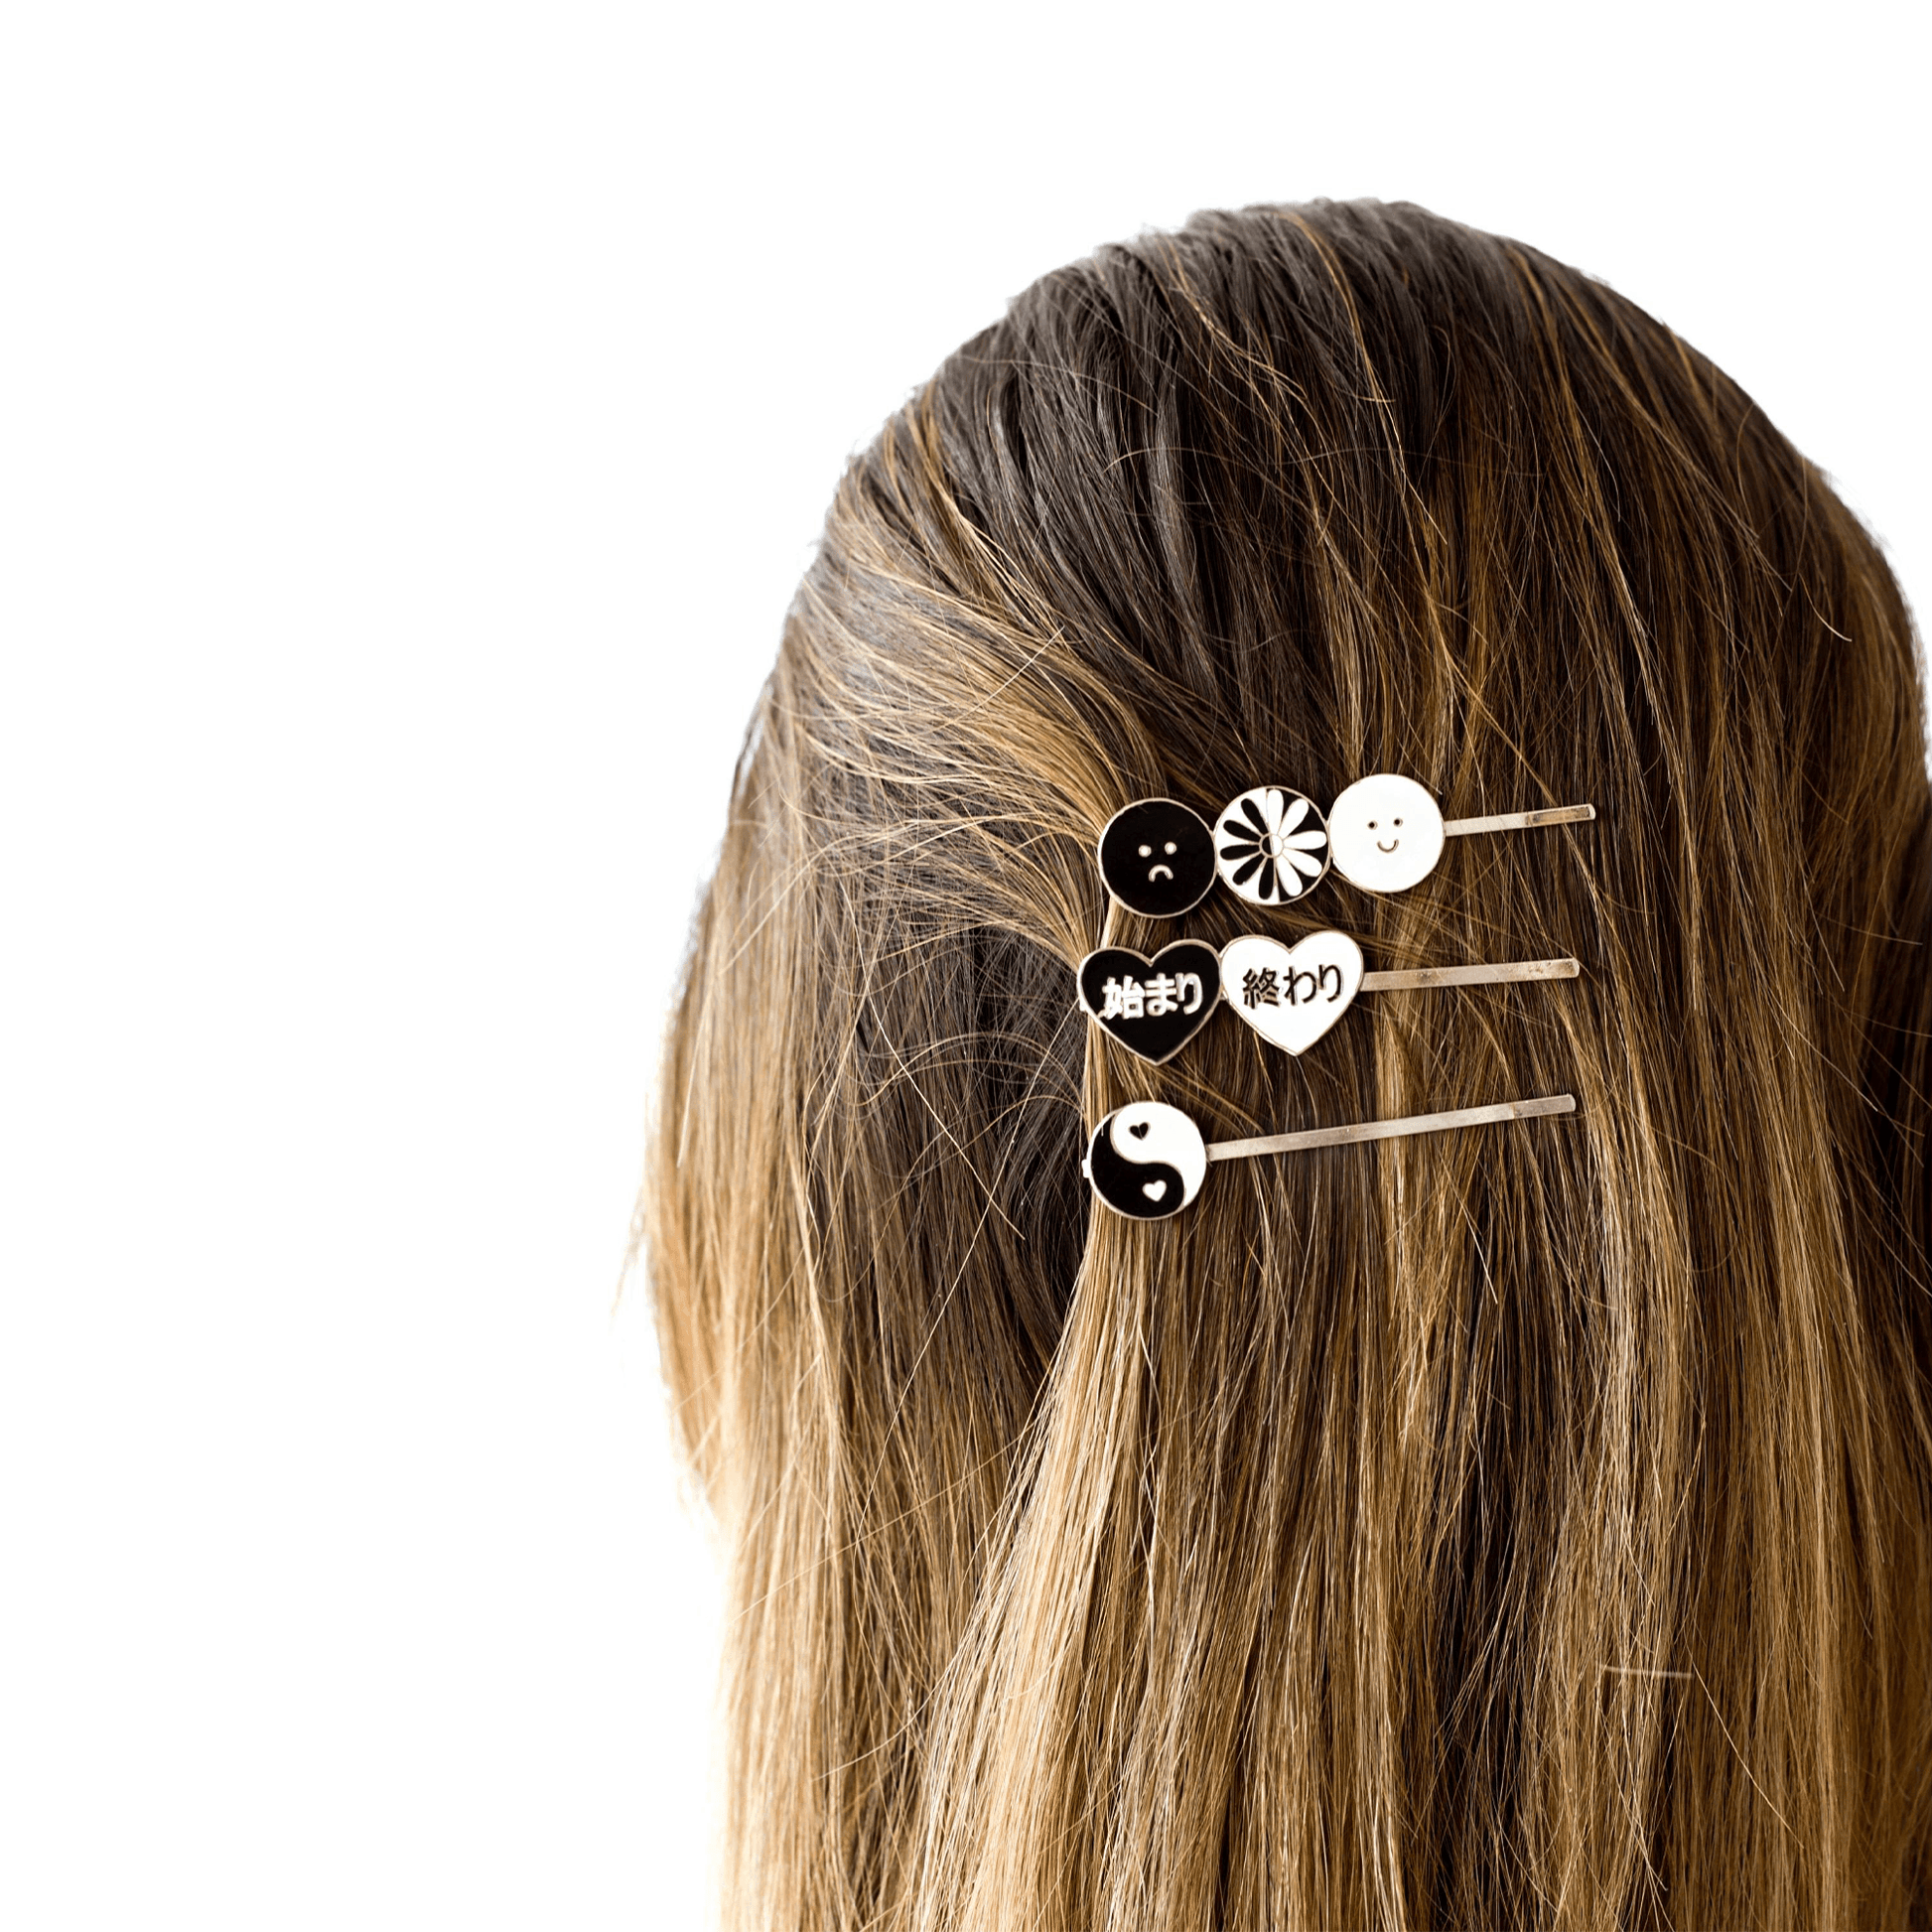 Pasadores cabello PRINCIPIO FIN – Materia Ilustrada